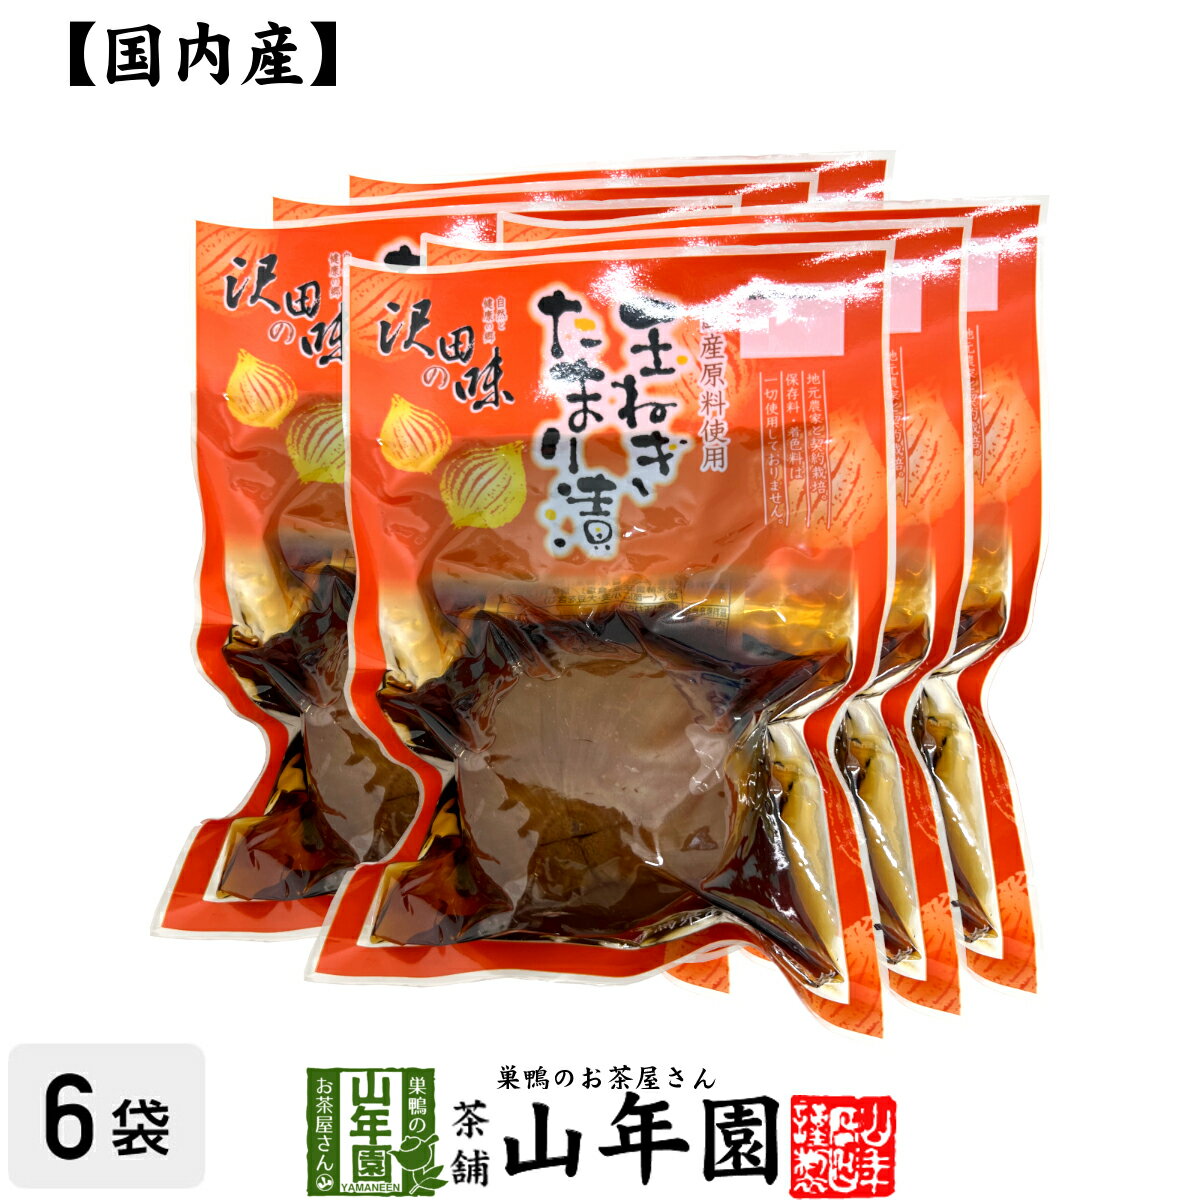 【国産原料使用】沢田の味 玉ねぎ たまり漬 1個×6袋セ